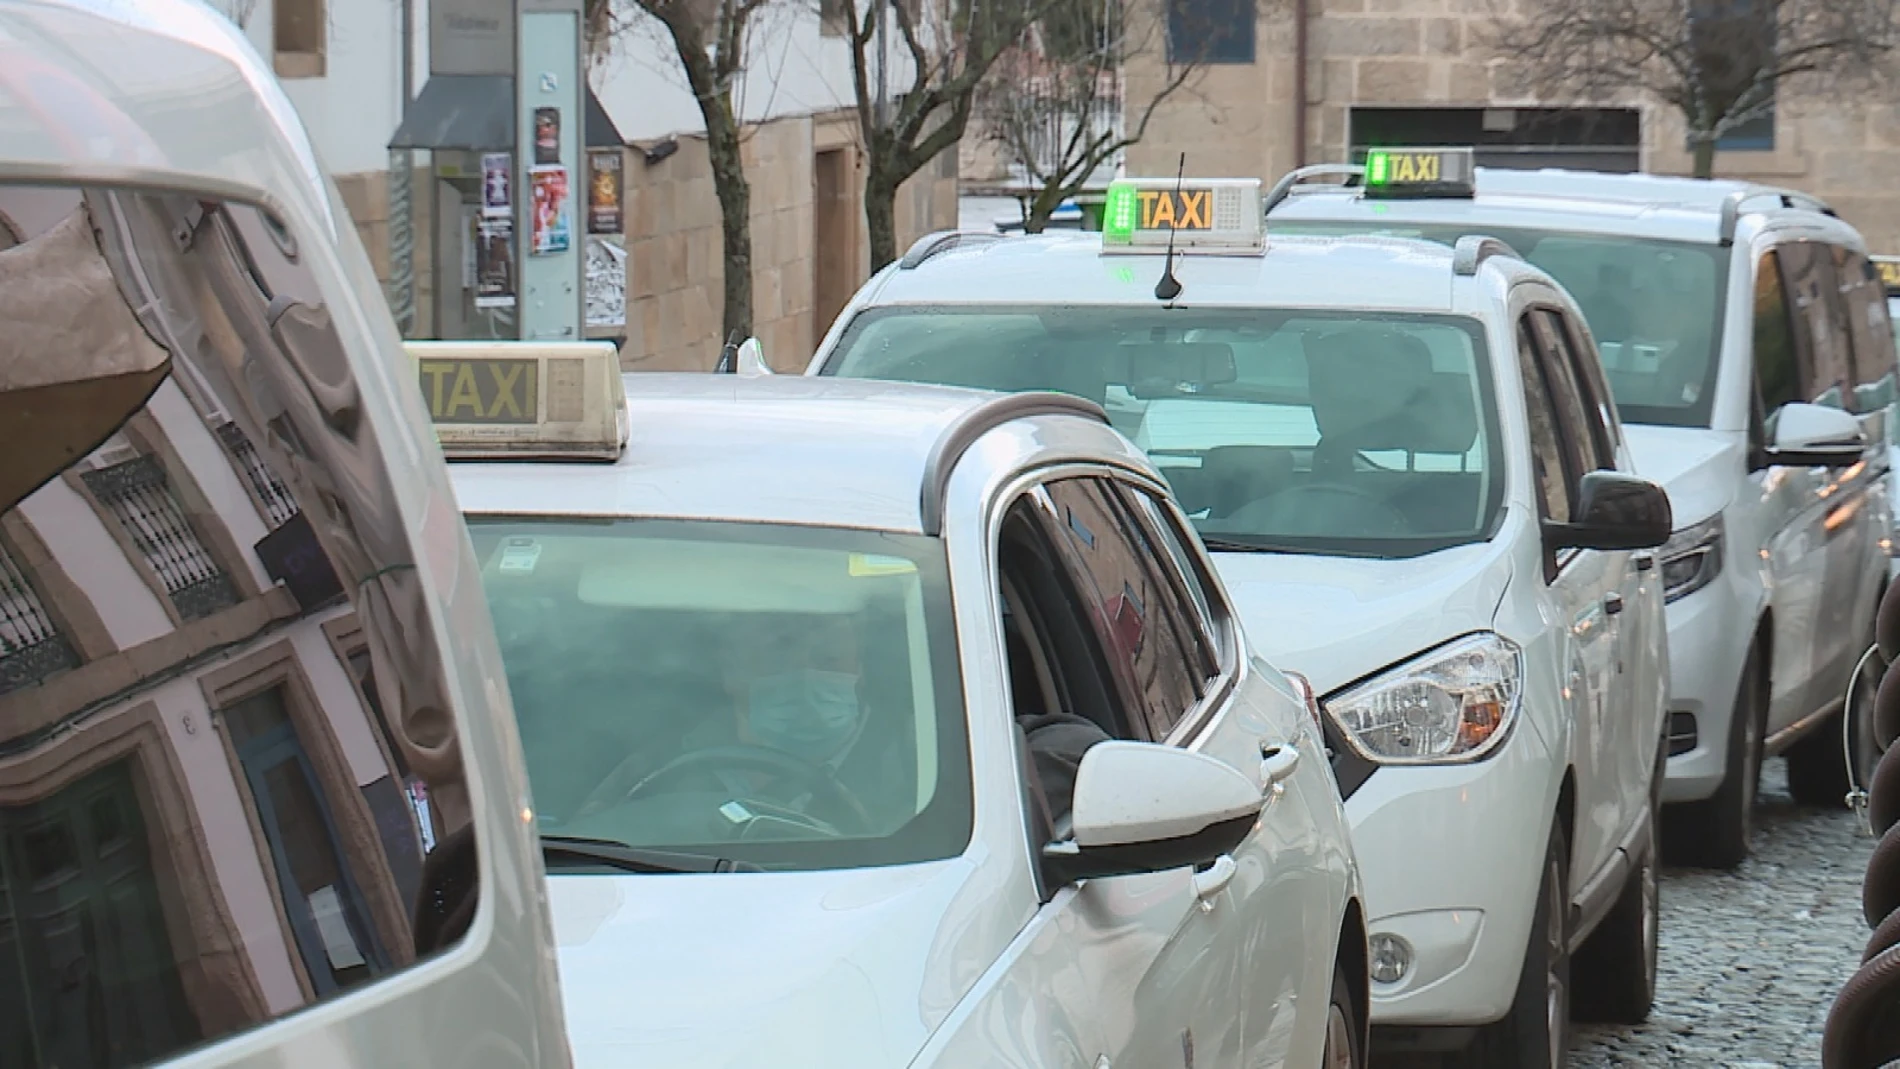 Demanda de taxis en toda España: "Llevamos meses trabajando y hay forma de cubrir el trabajo"